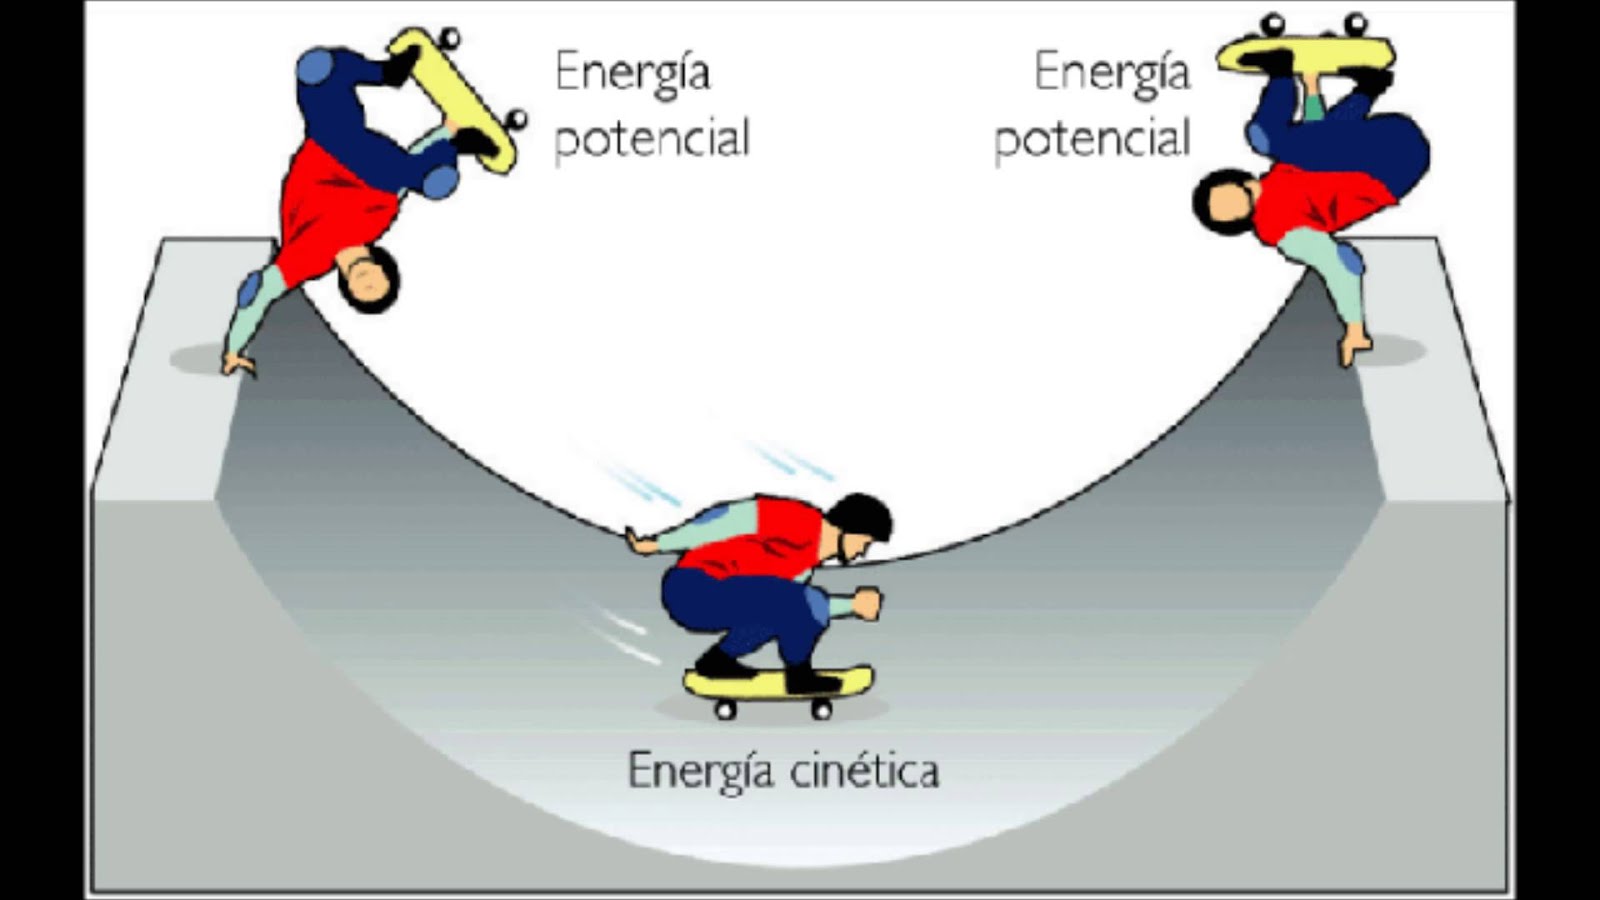 Energia potencial